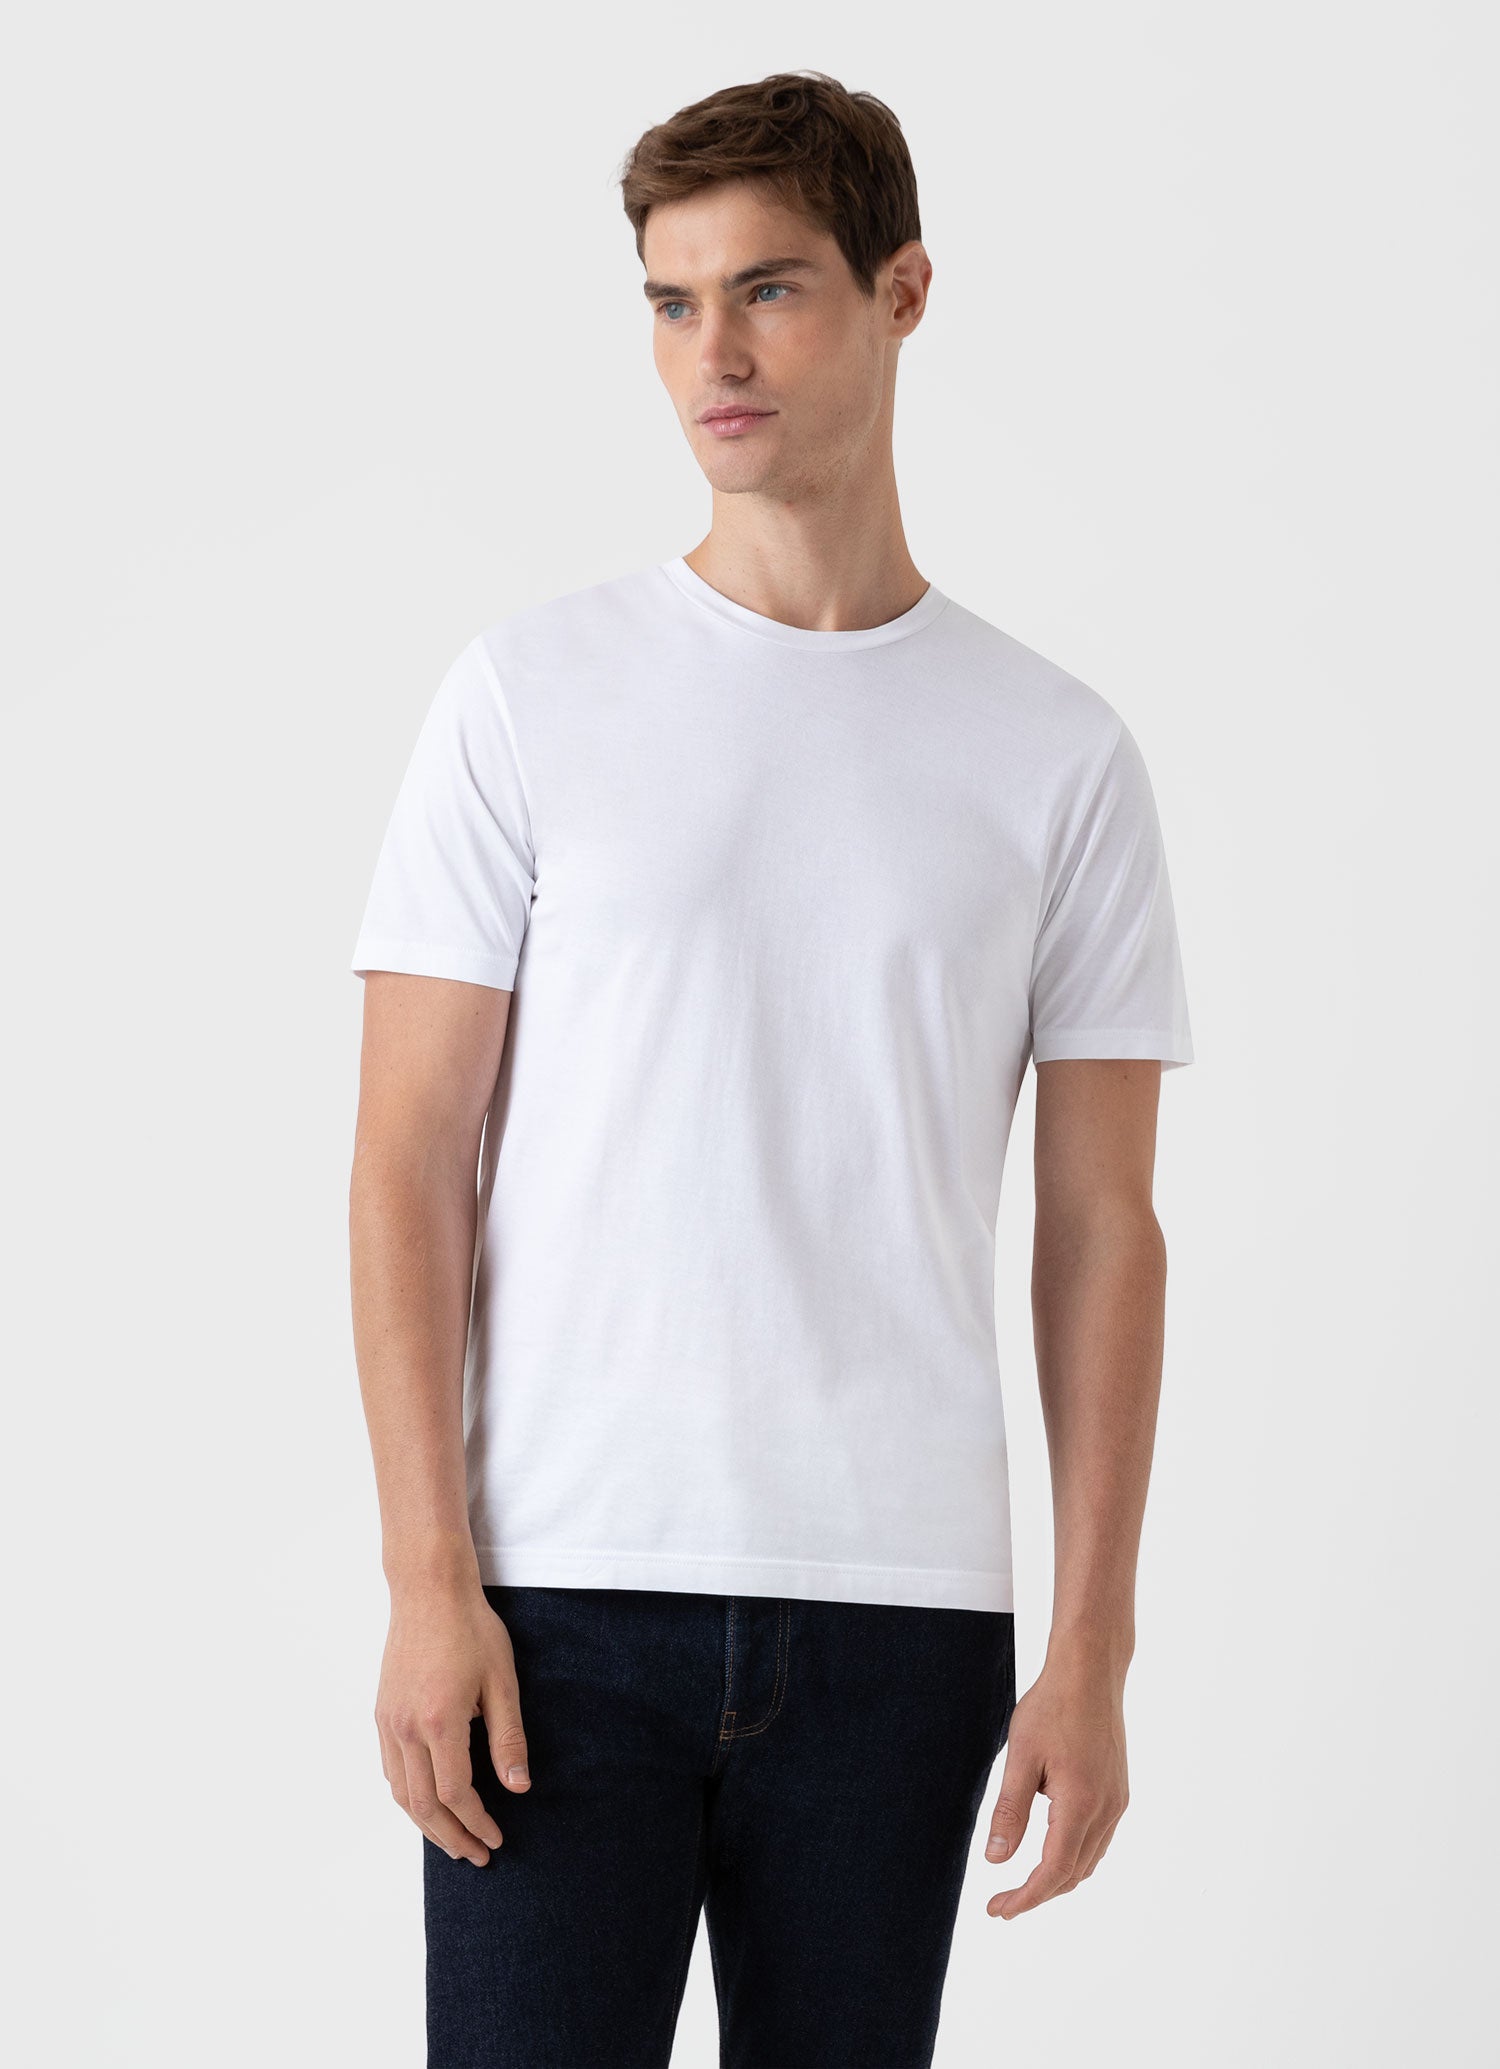 リヴィエラ（ミッドウェイト） Tシャツ （White）| Sunspel